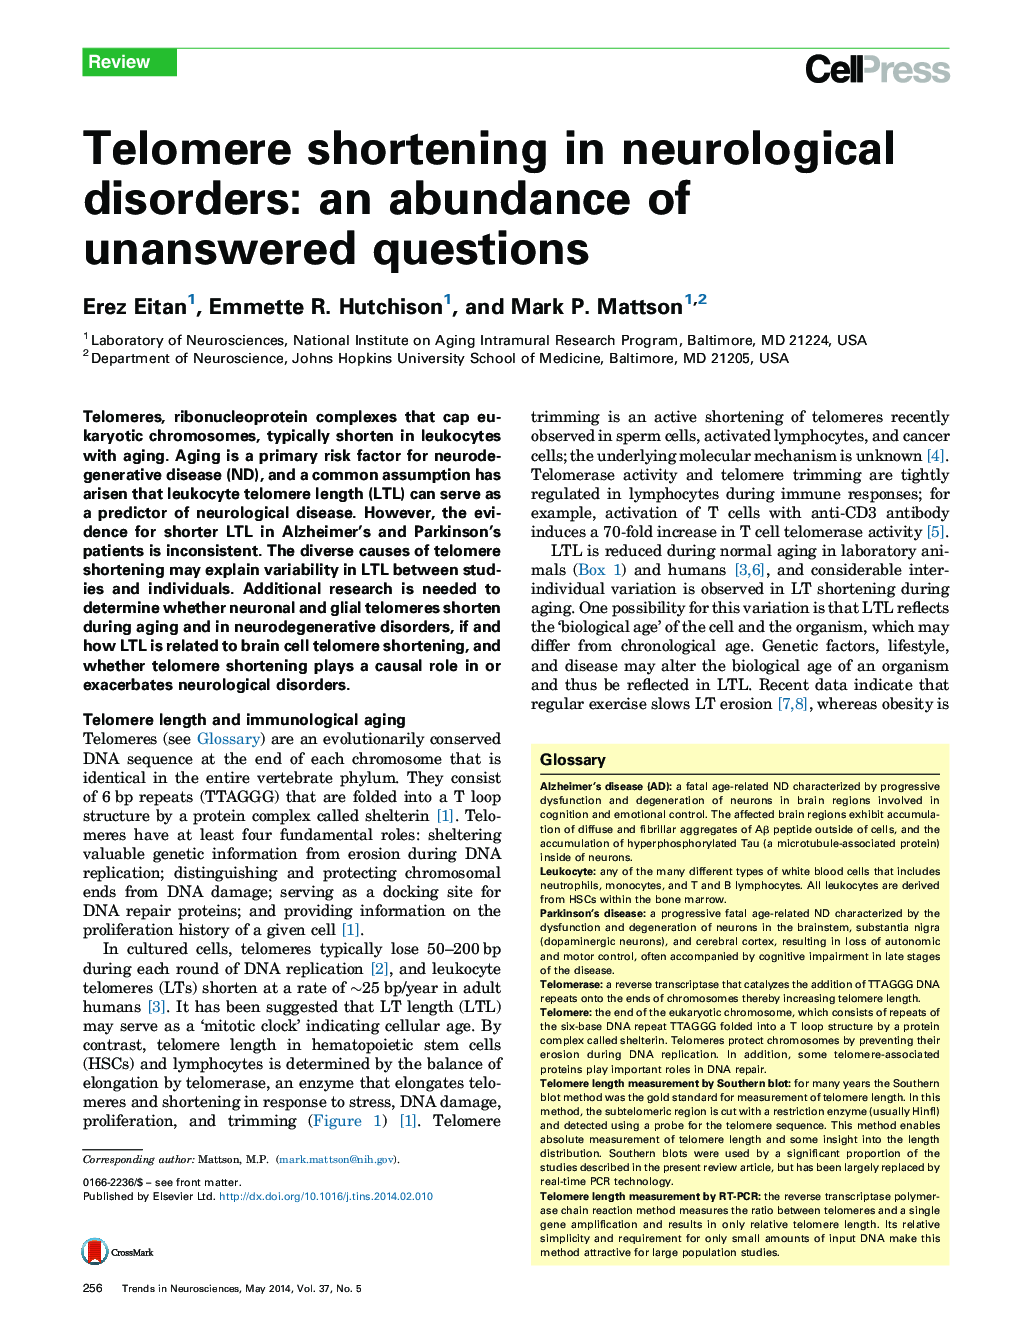 کاهش تلومر در اختلالات عصبی: فراوانی پرسشهای پاسخدهنده 